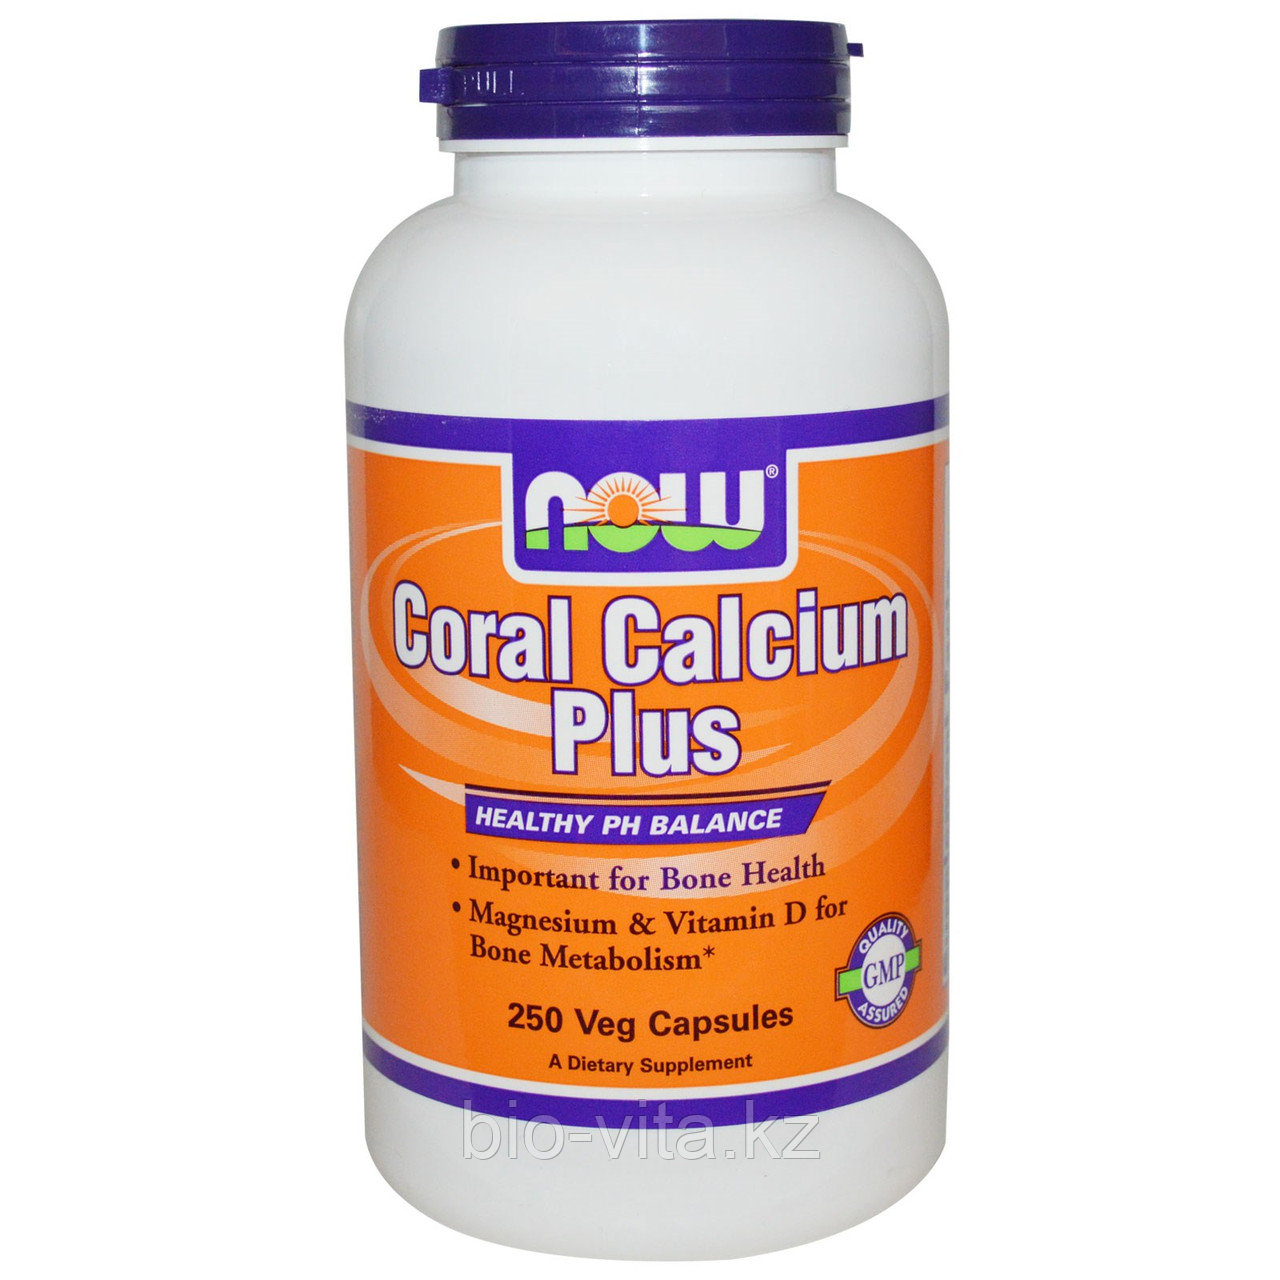 Коралловый кальций. Coral Calcium Plus, 250 капсул.Идеален для детей.  Now Foods БЕСПЛАТНАЯ ДОСТАВКА